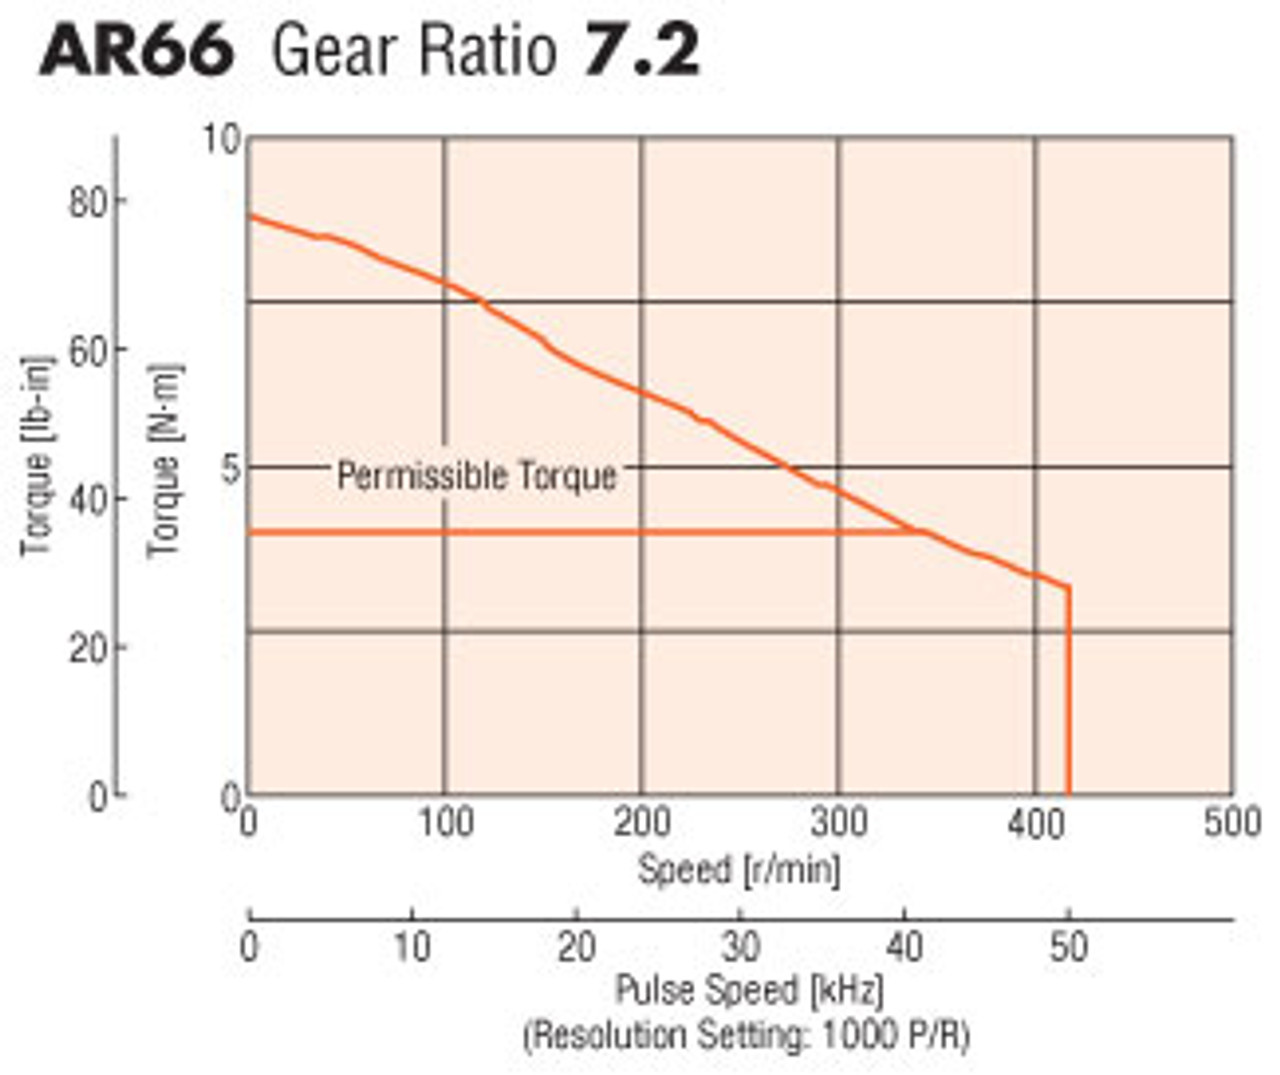 AR66AAD-PS7-3 - Speed-Torque